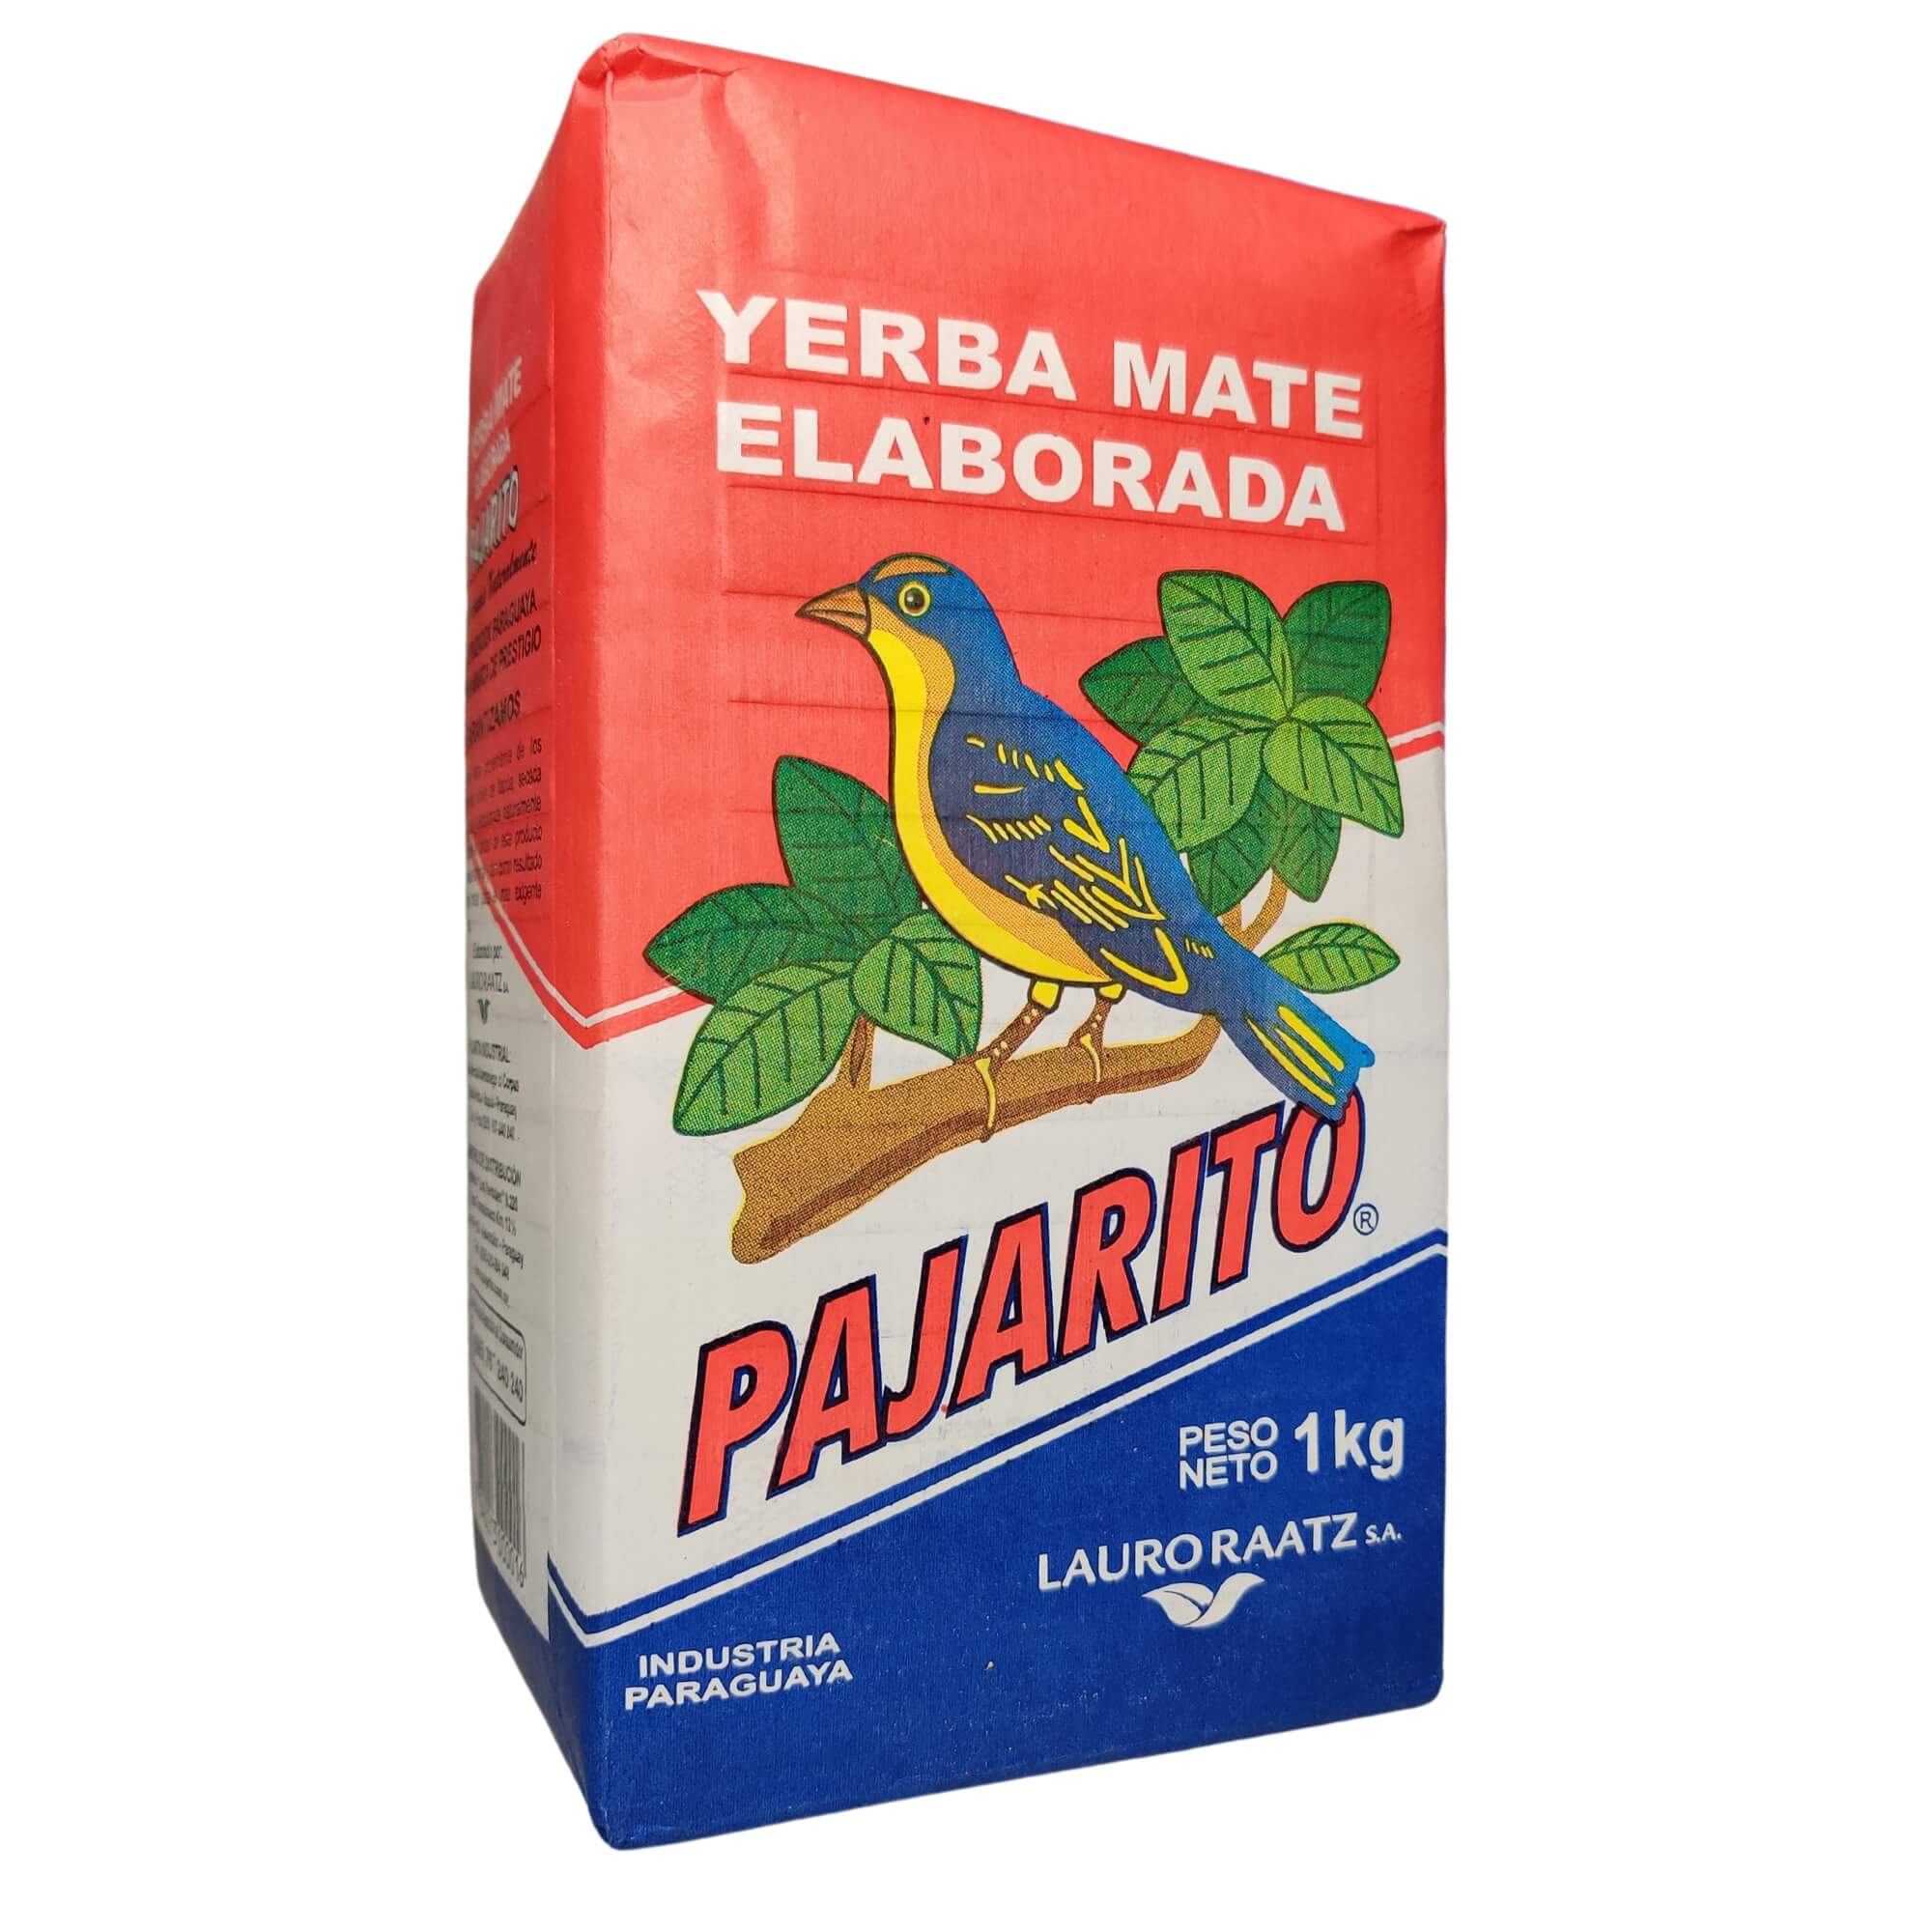 Yerba Mate Pajarito 1 kg - Lauro Raatz